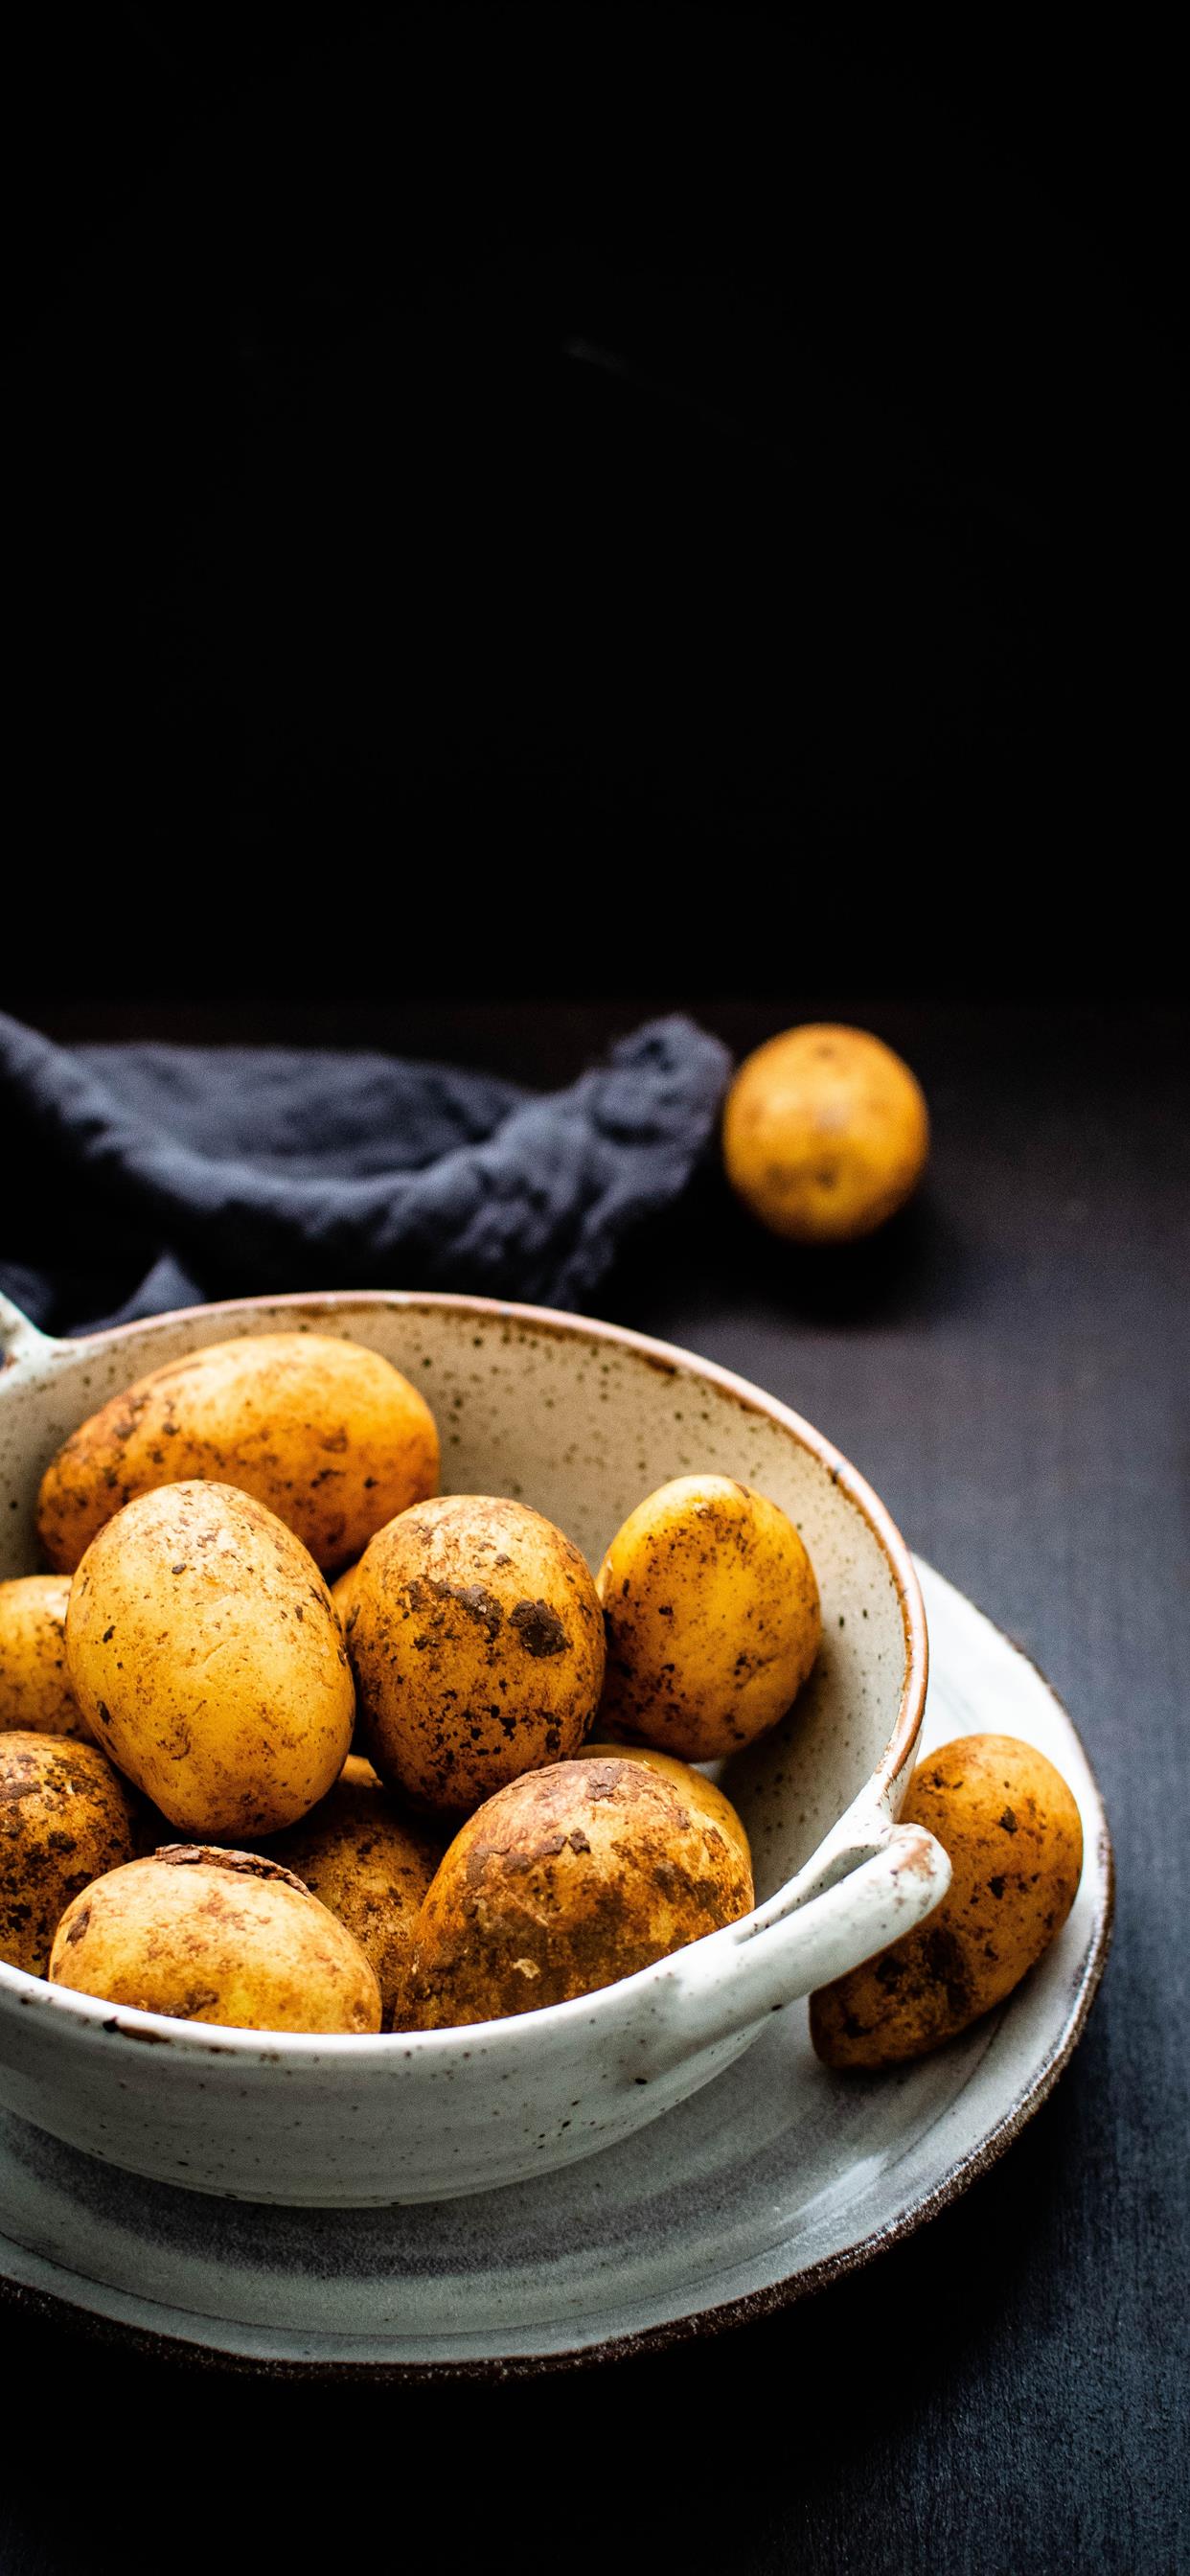 Potato bowl iPhone X Wallpaper Free Download